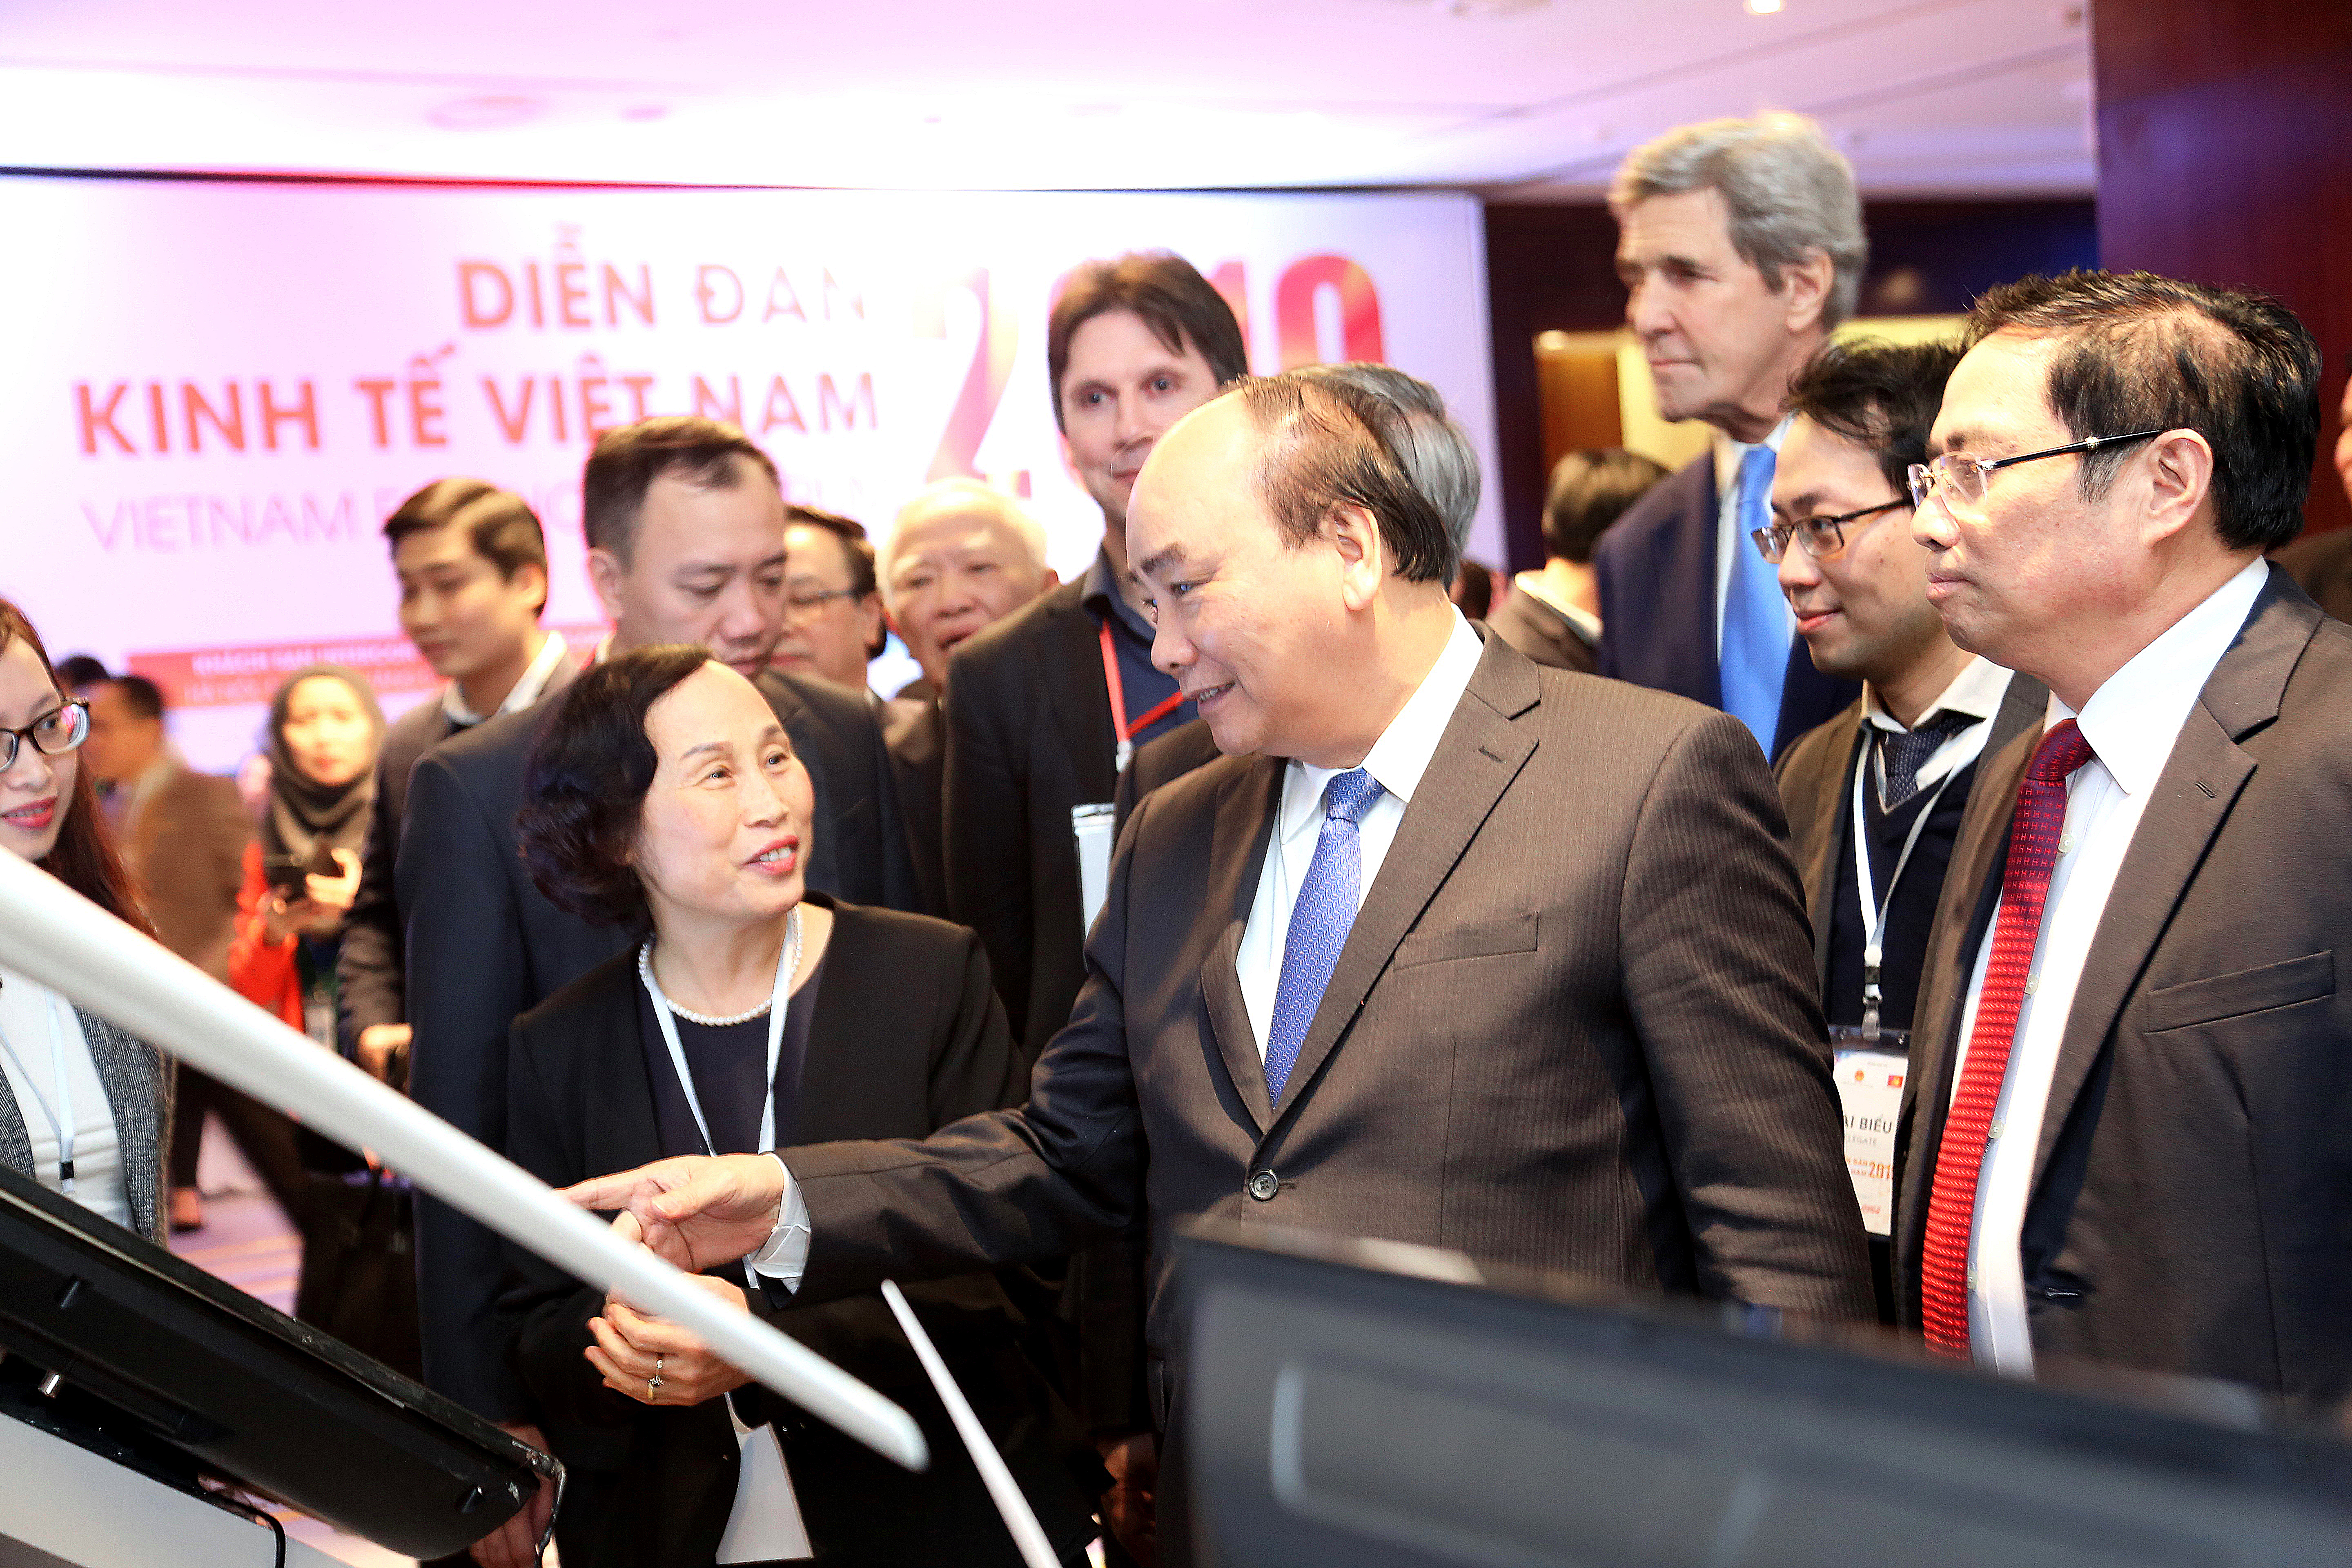 Thủ tướng Nguyễn Xuân Phúc và các đại biểu tại Diễn đàn Kinh tế Việt Nam 2019 do Chính phủ và Ban Kinh tế Trung ương tổ chức ngày 17-01-2019. Ảnh: BTC